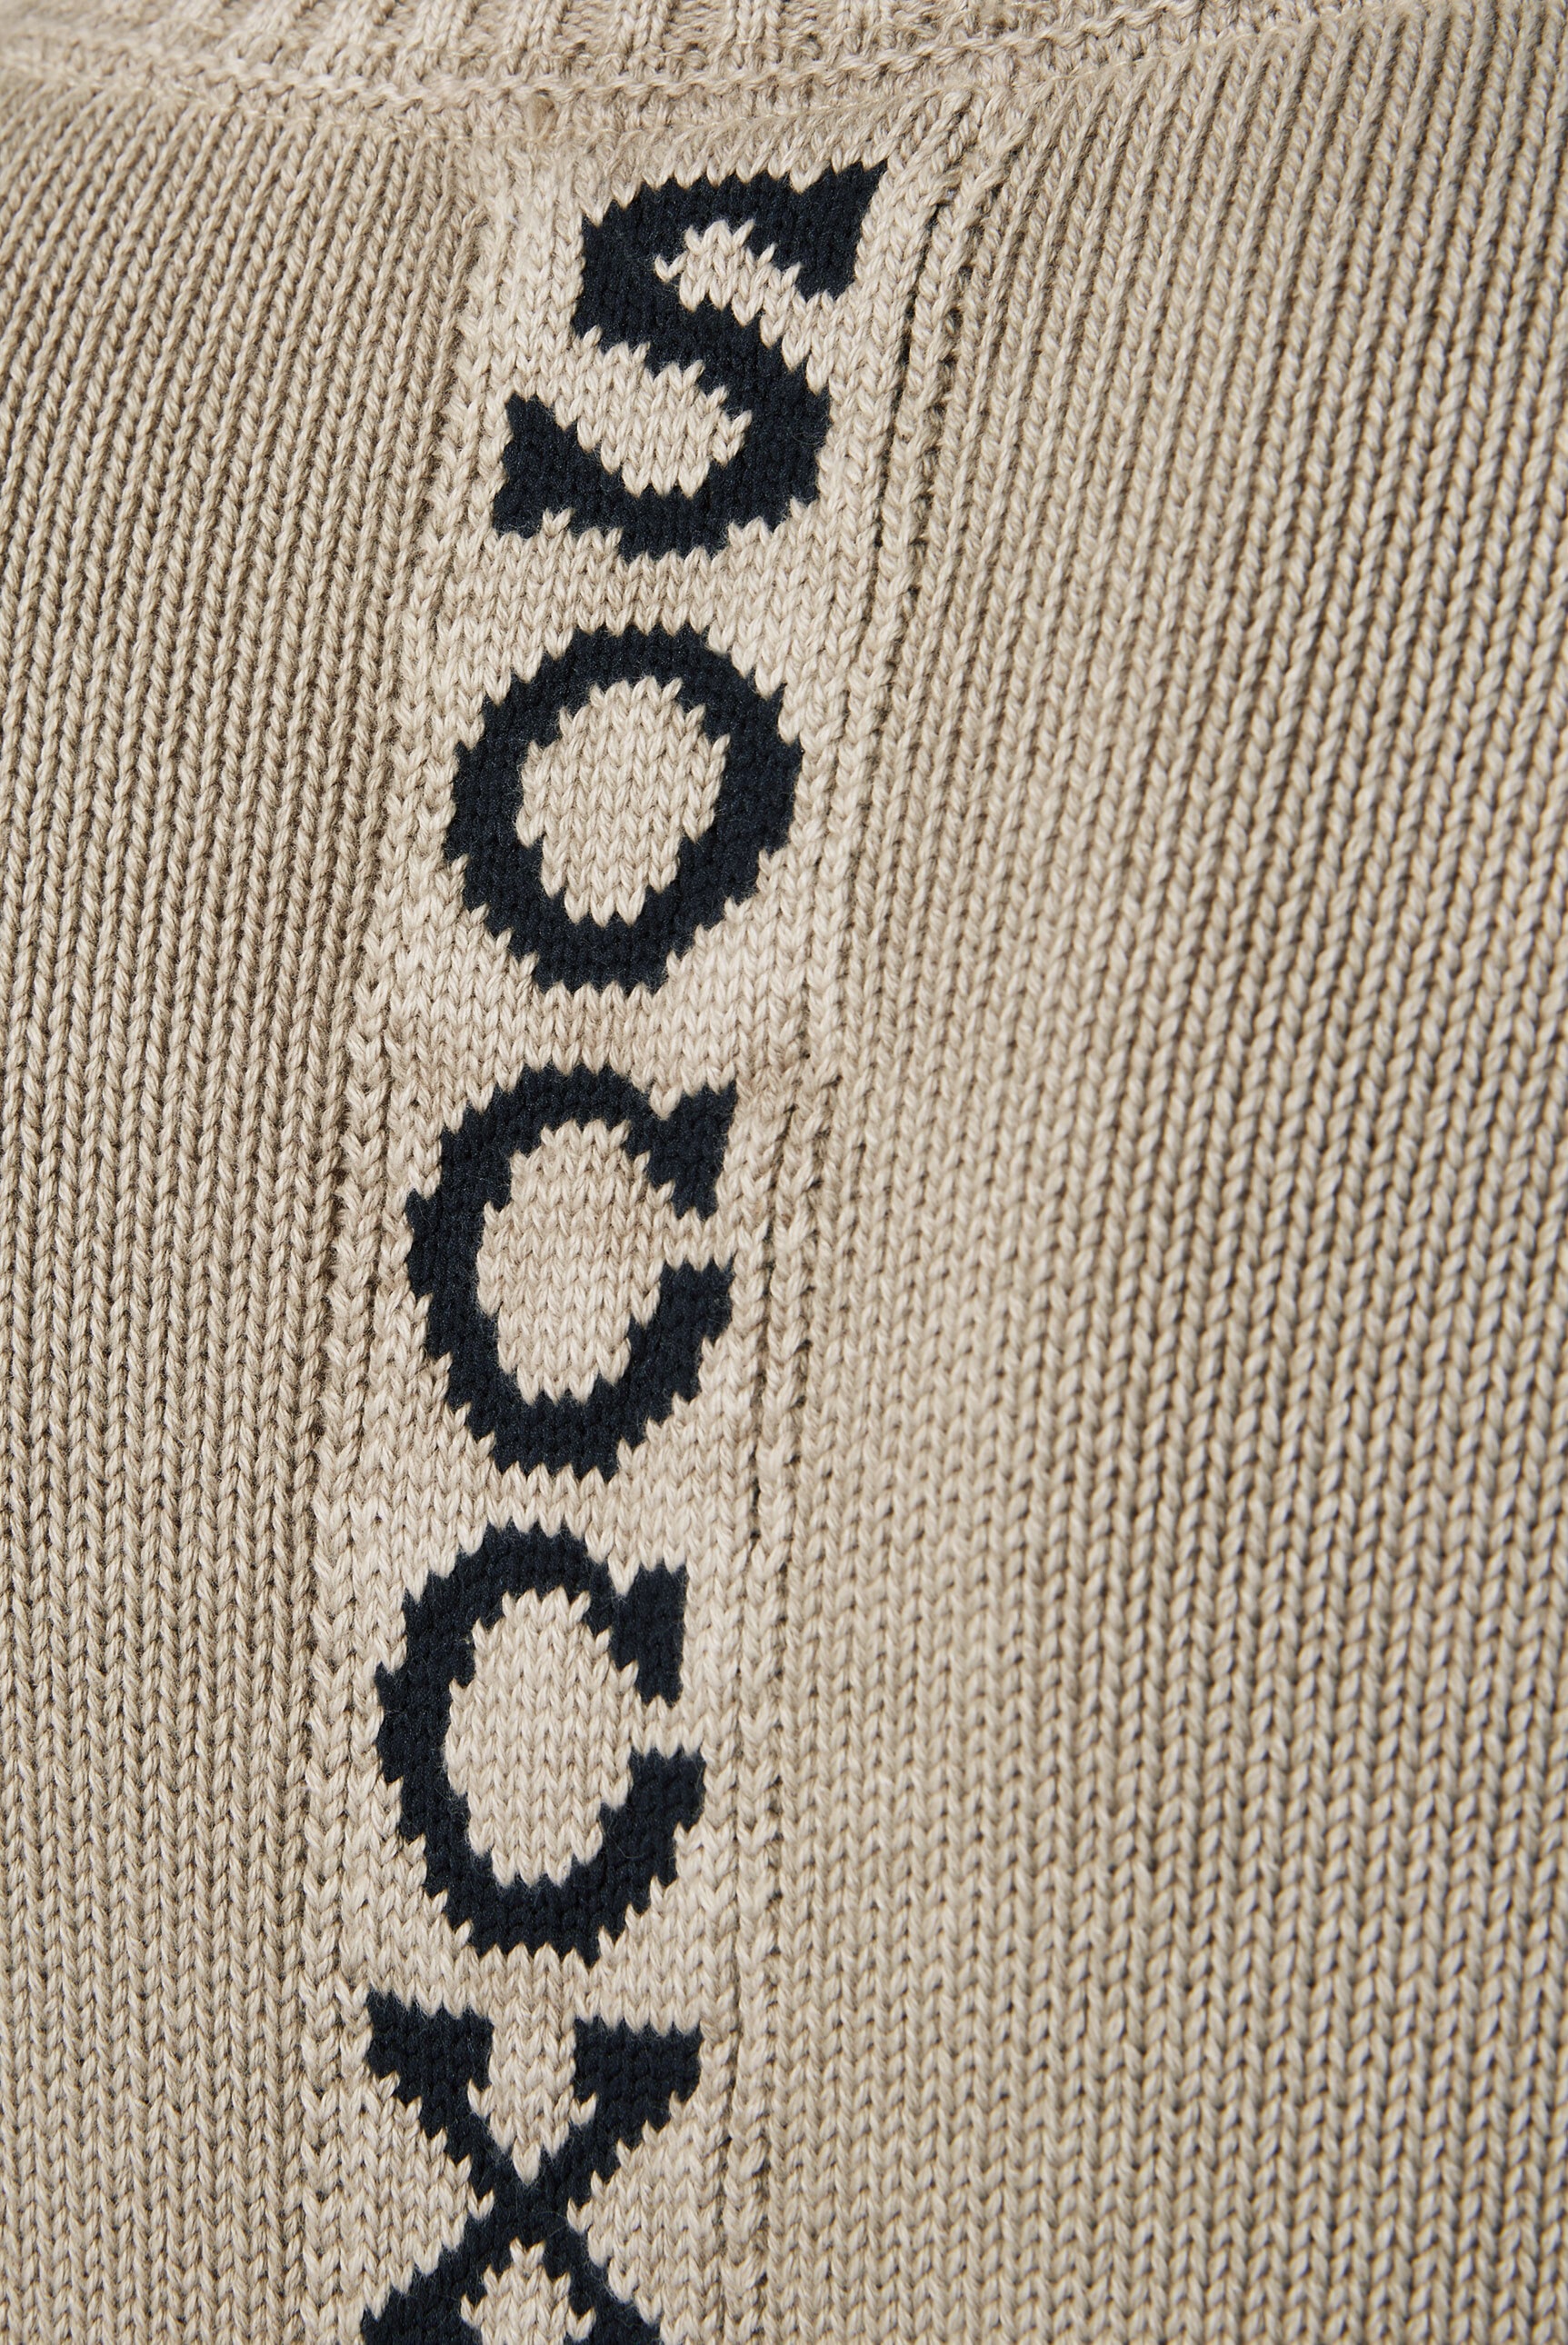 SOCCX V-Ausschnitt-Pullover, aus Baumwolle